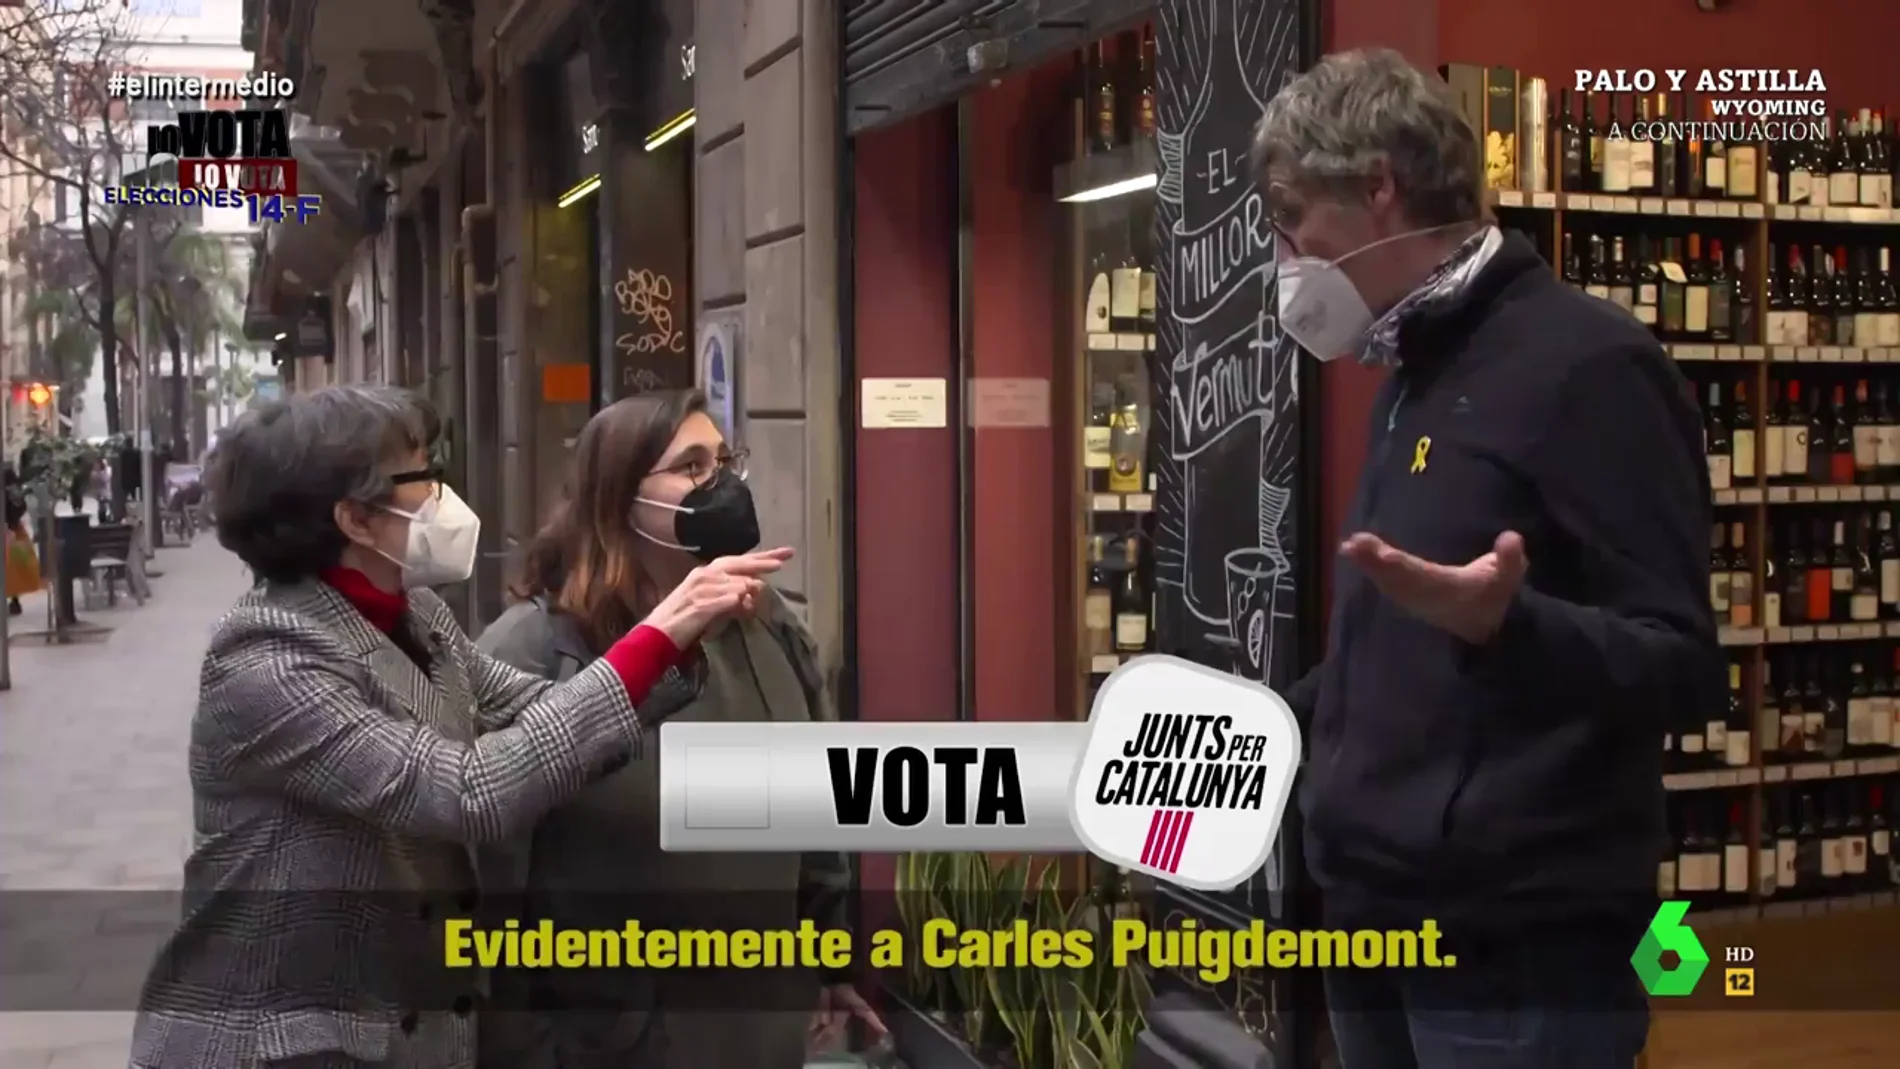 La respuesta de un hombre en Cataluña cuando Thais Villas le pregunta en la calle: "Lo haré en catalán"